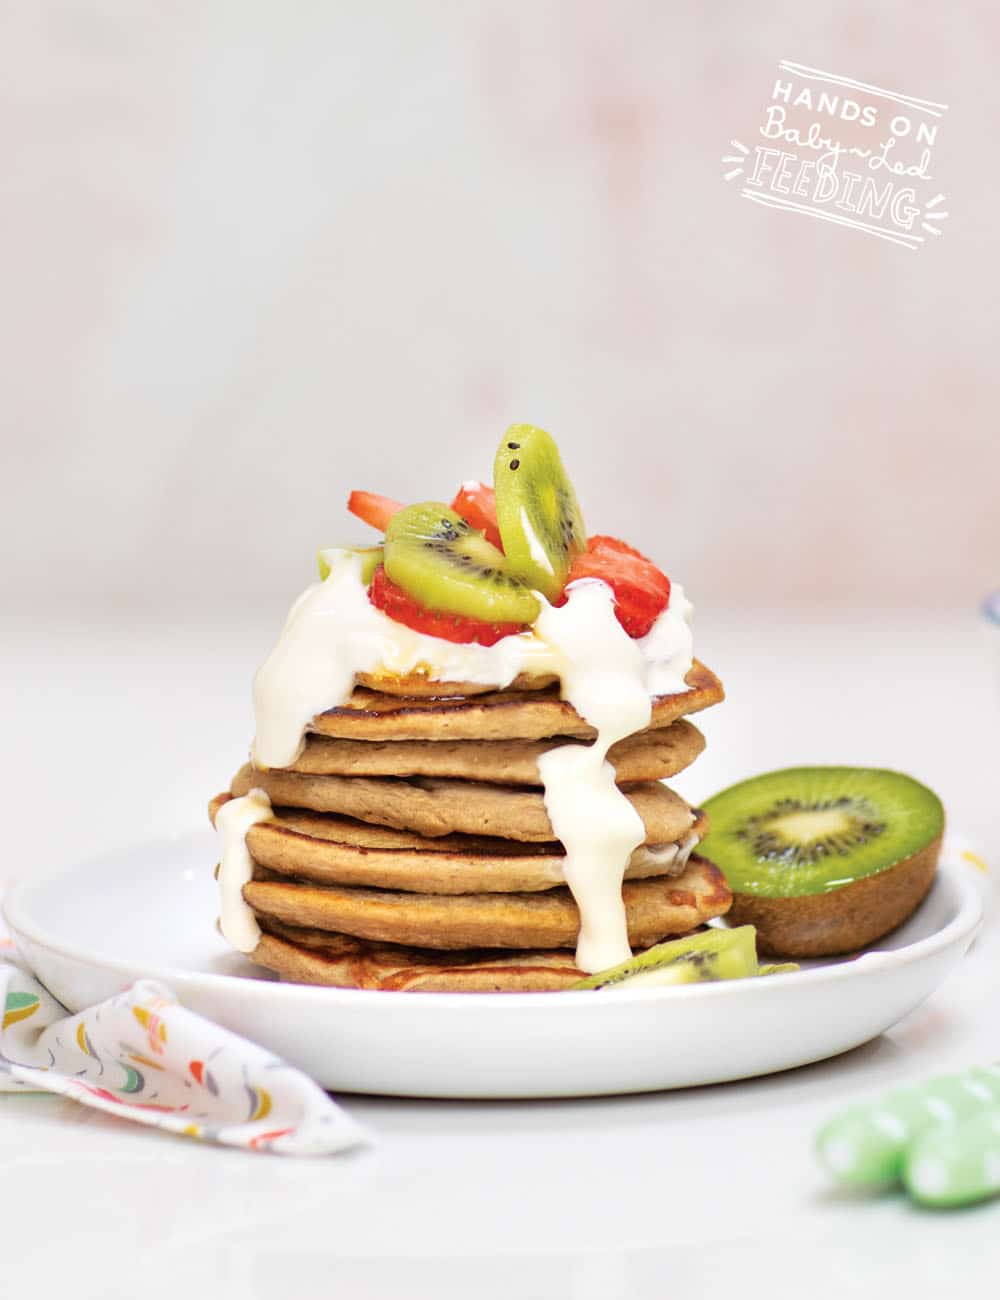 Baby Led Feeding Oat and Banana Pancakes with Yogurt Recipe Images2